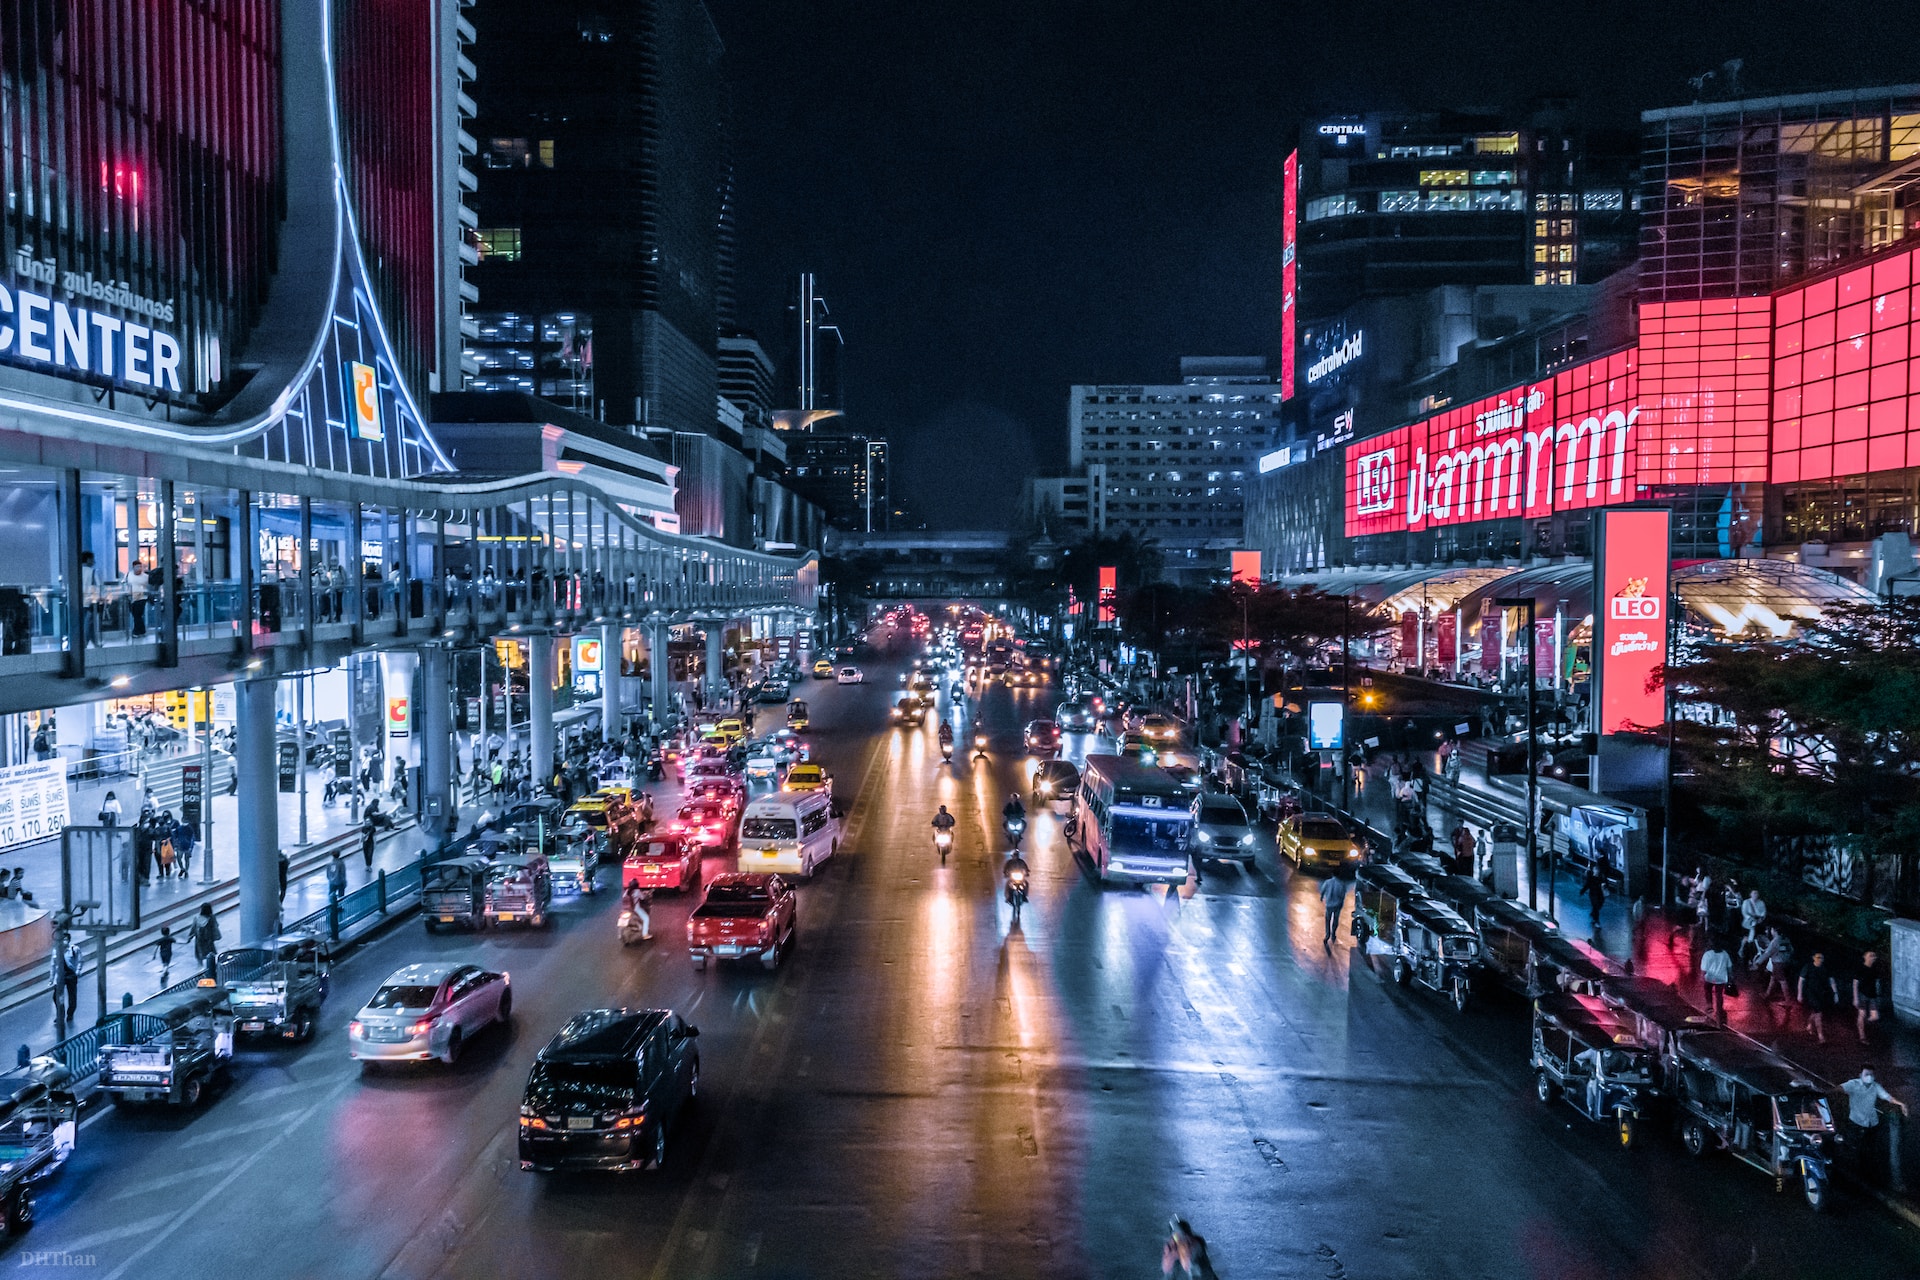 Tips to Explore the Nightlife Scene in Bangkok